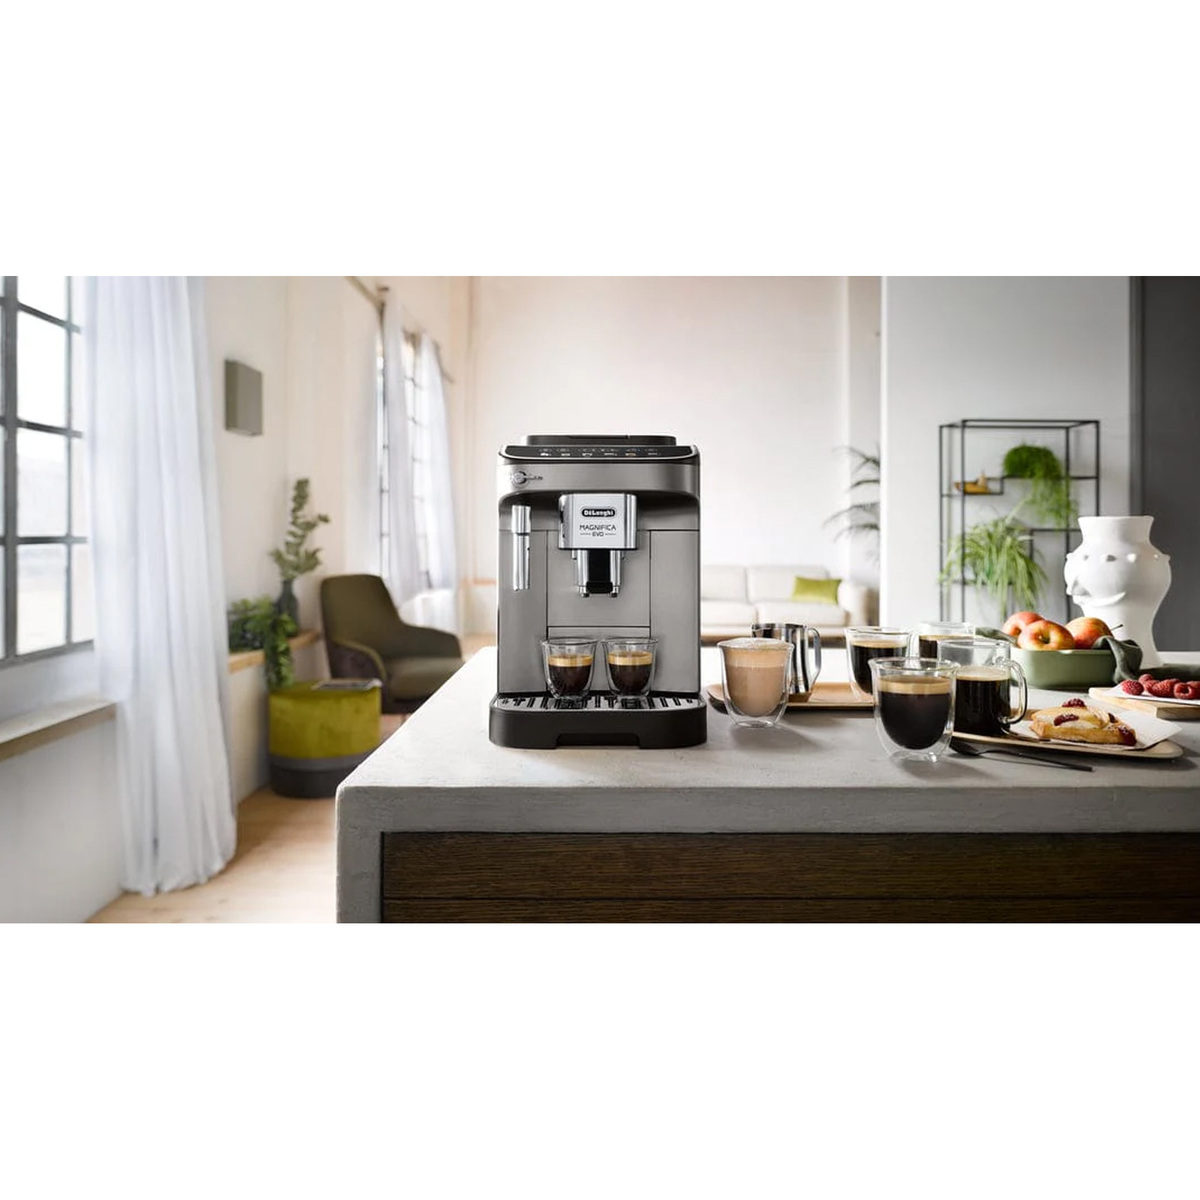 DeLonghi Magnifica Evo Automatic Coffee Machine  ECAM290.42.TB